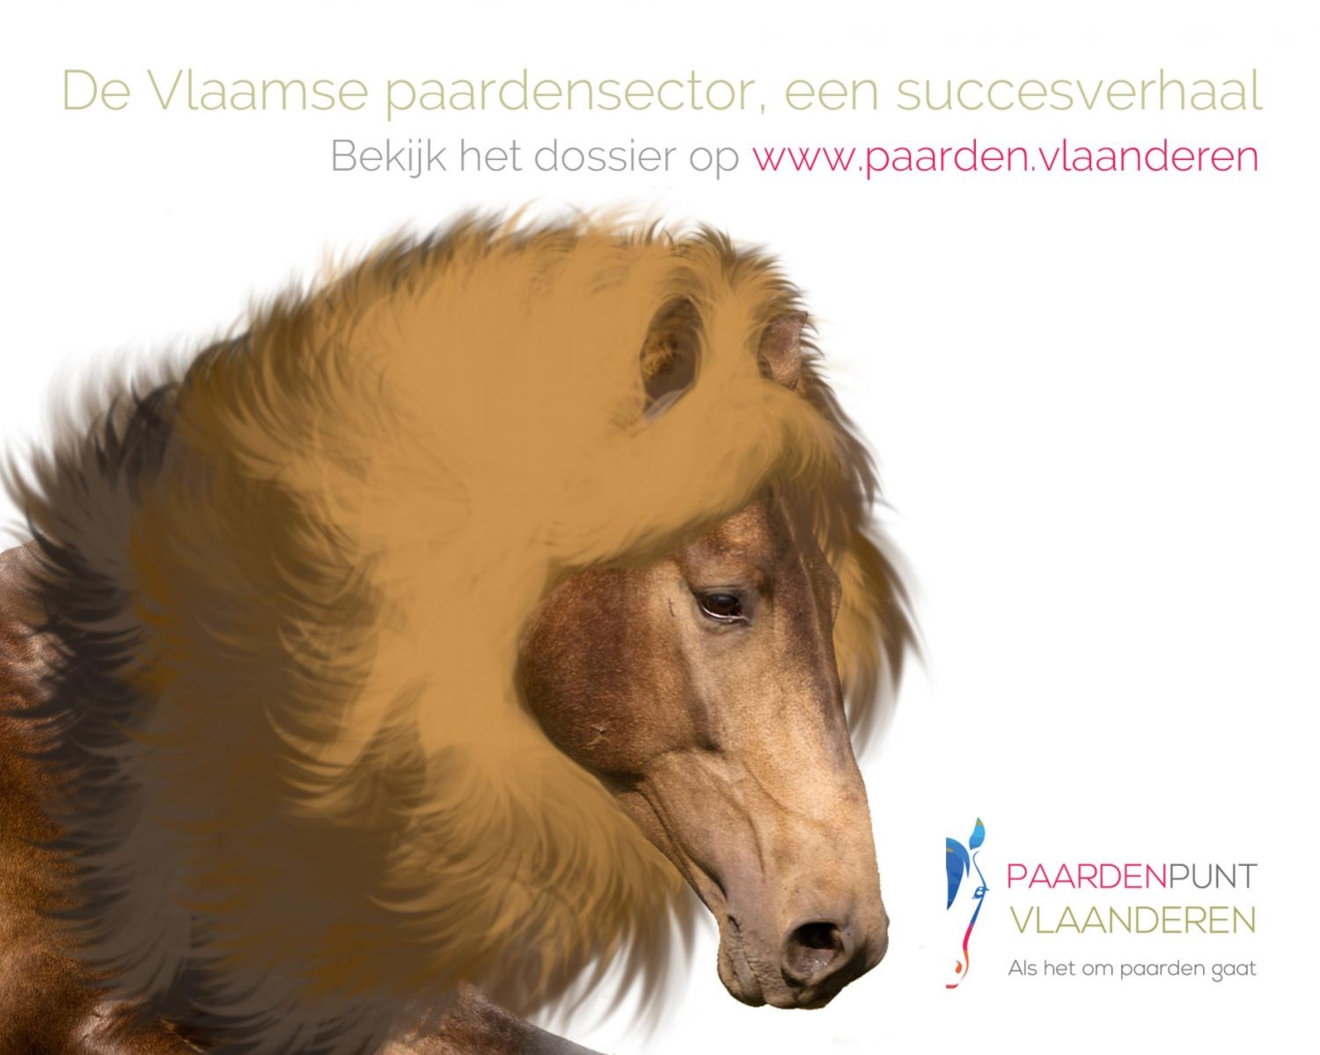 Vernieuwd dossier! De paardensector in Vlaanderen, een succesverhaal